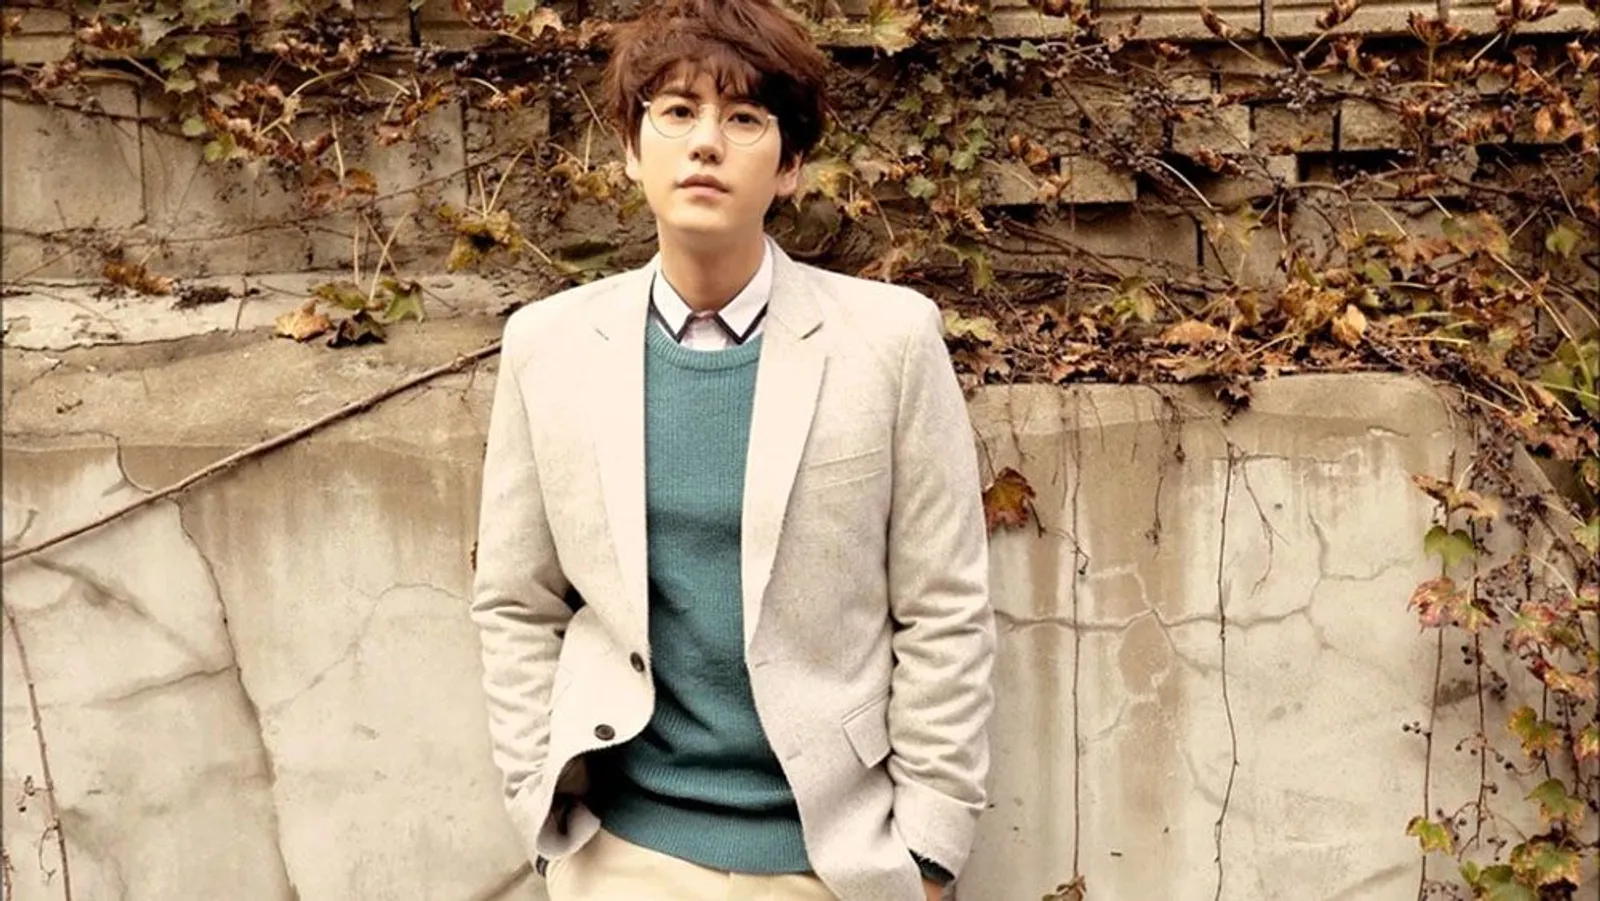 Lupa Rasanya Pacaran, Ini Fakta Kehidupan Cinta Kyuhyun ‘Super Junior’